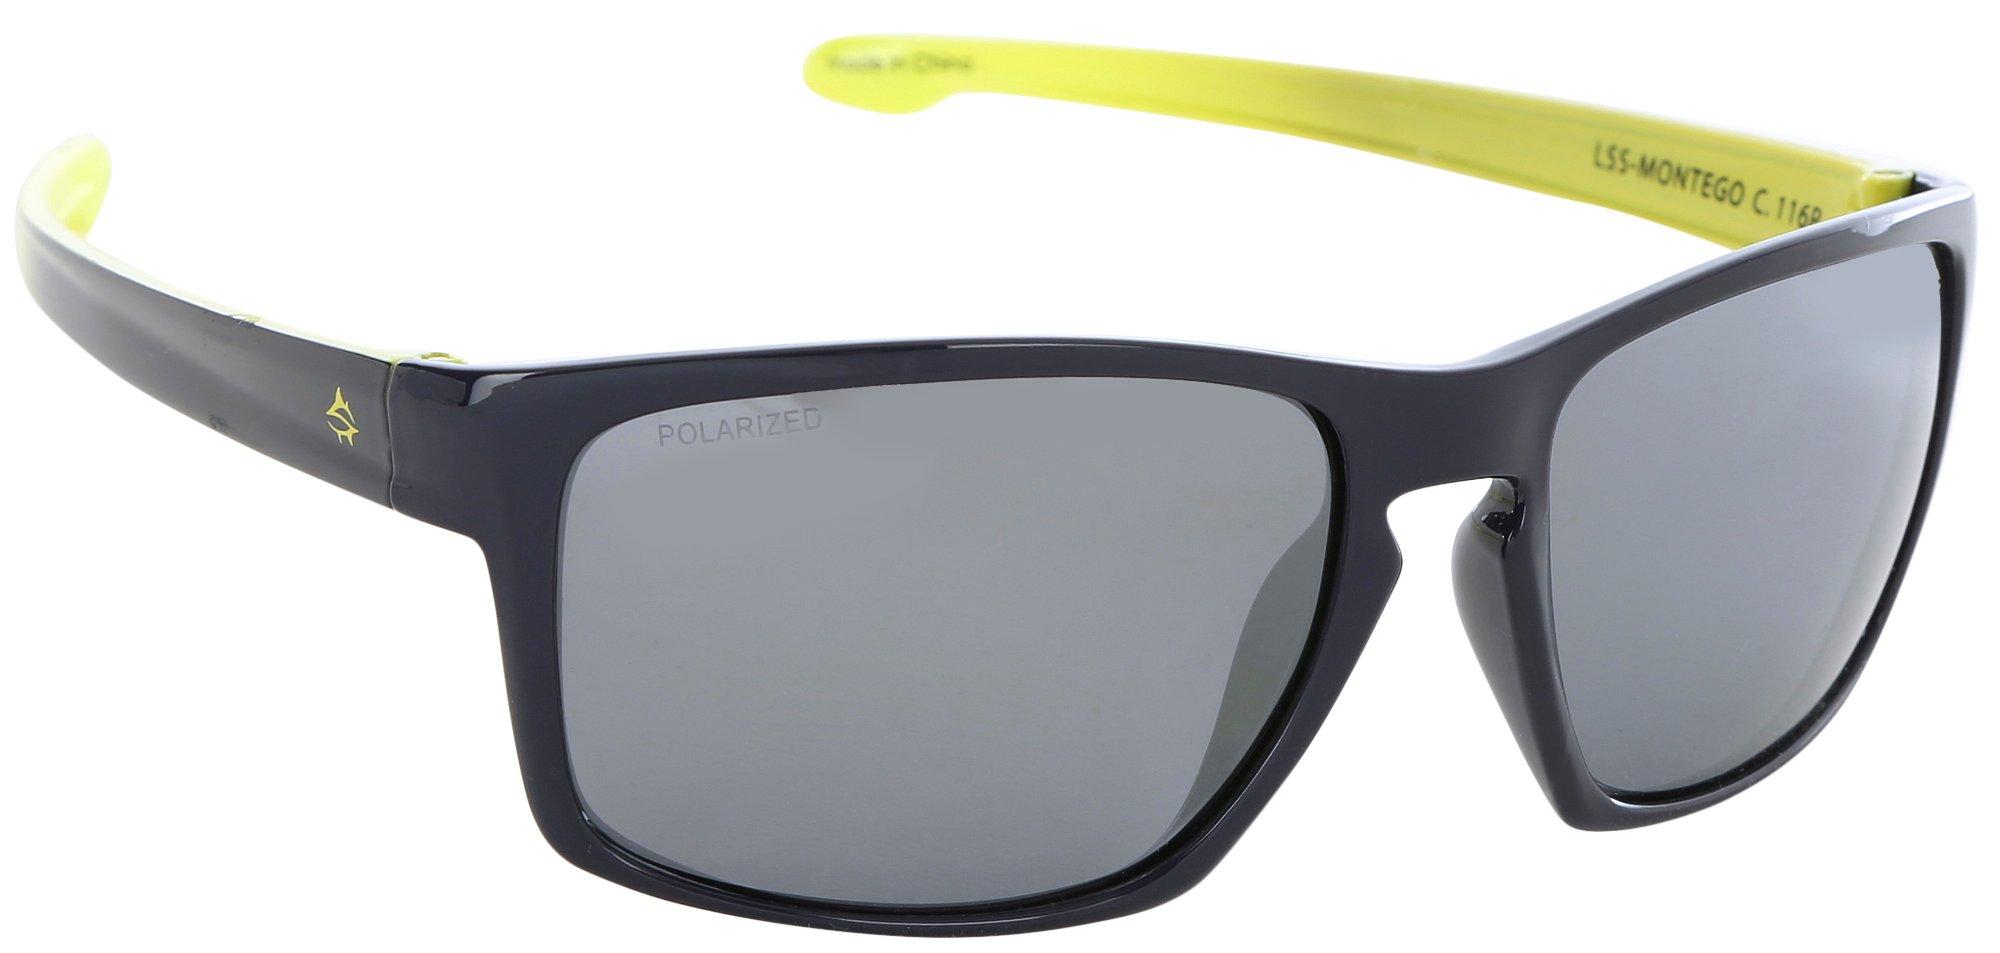 Loco Skailz Mens Classic Round Color Block Mirror Sunglasses